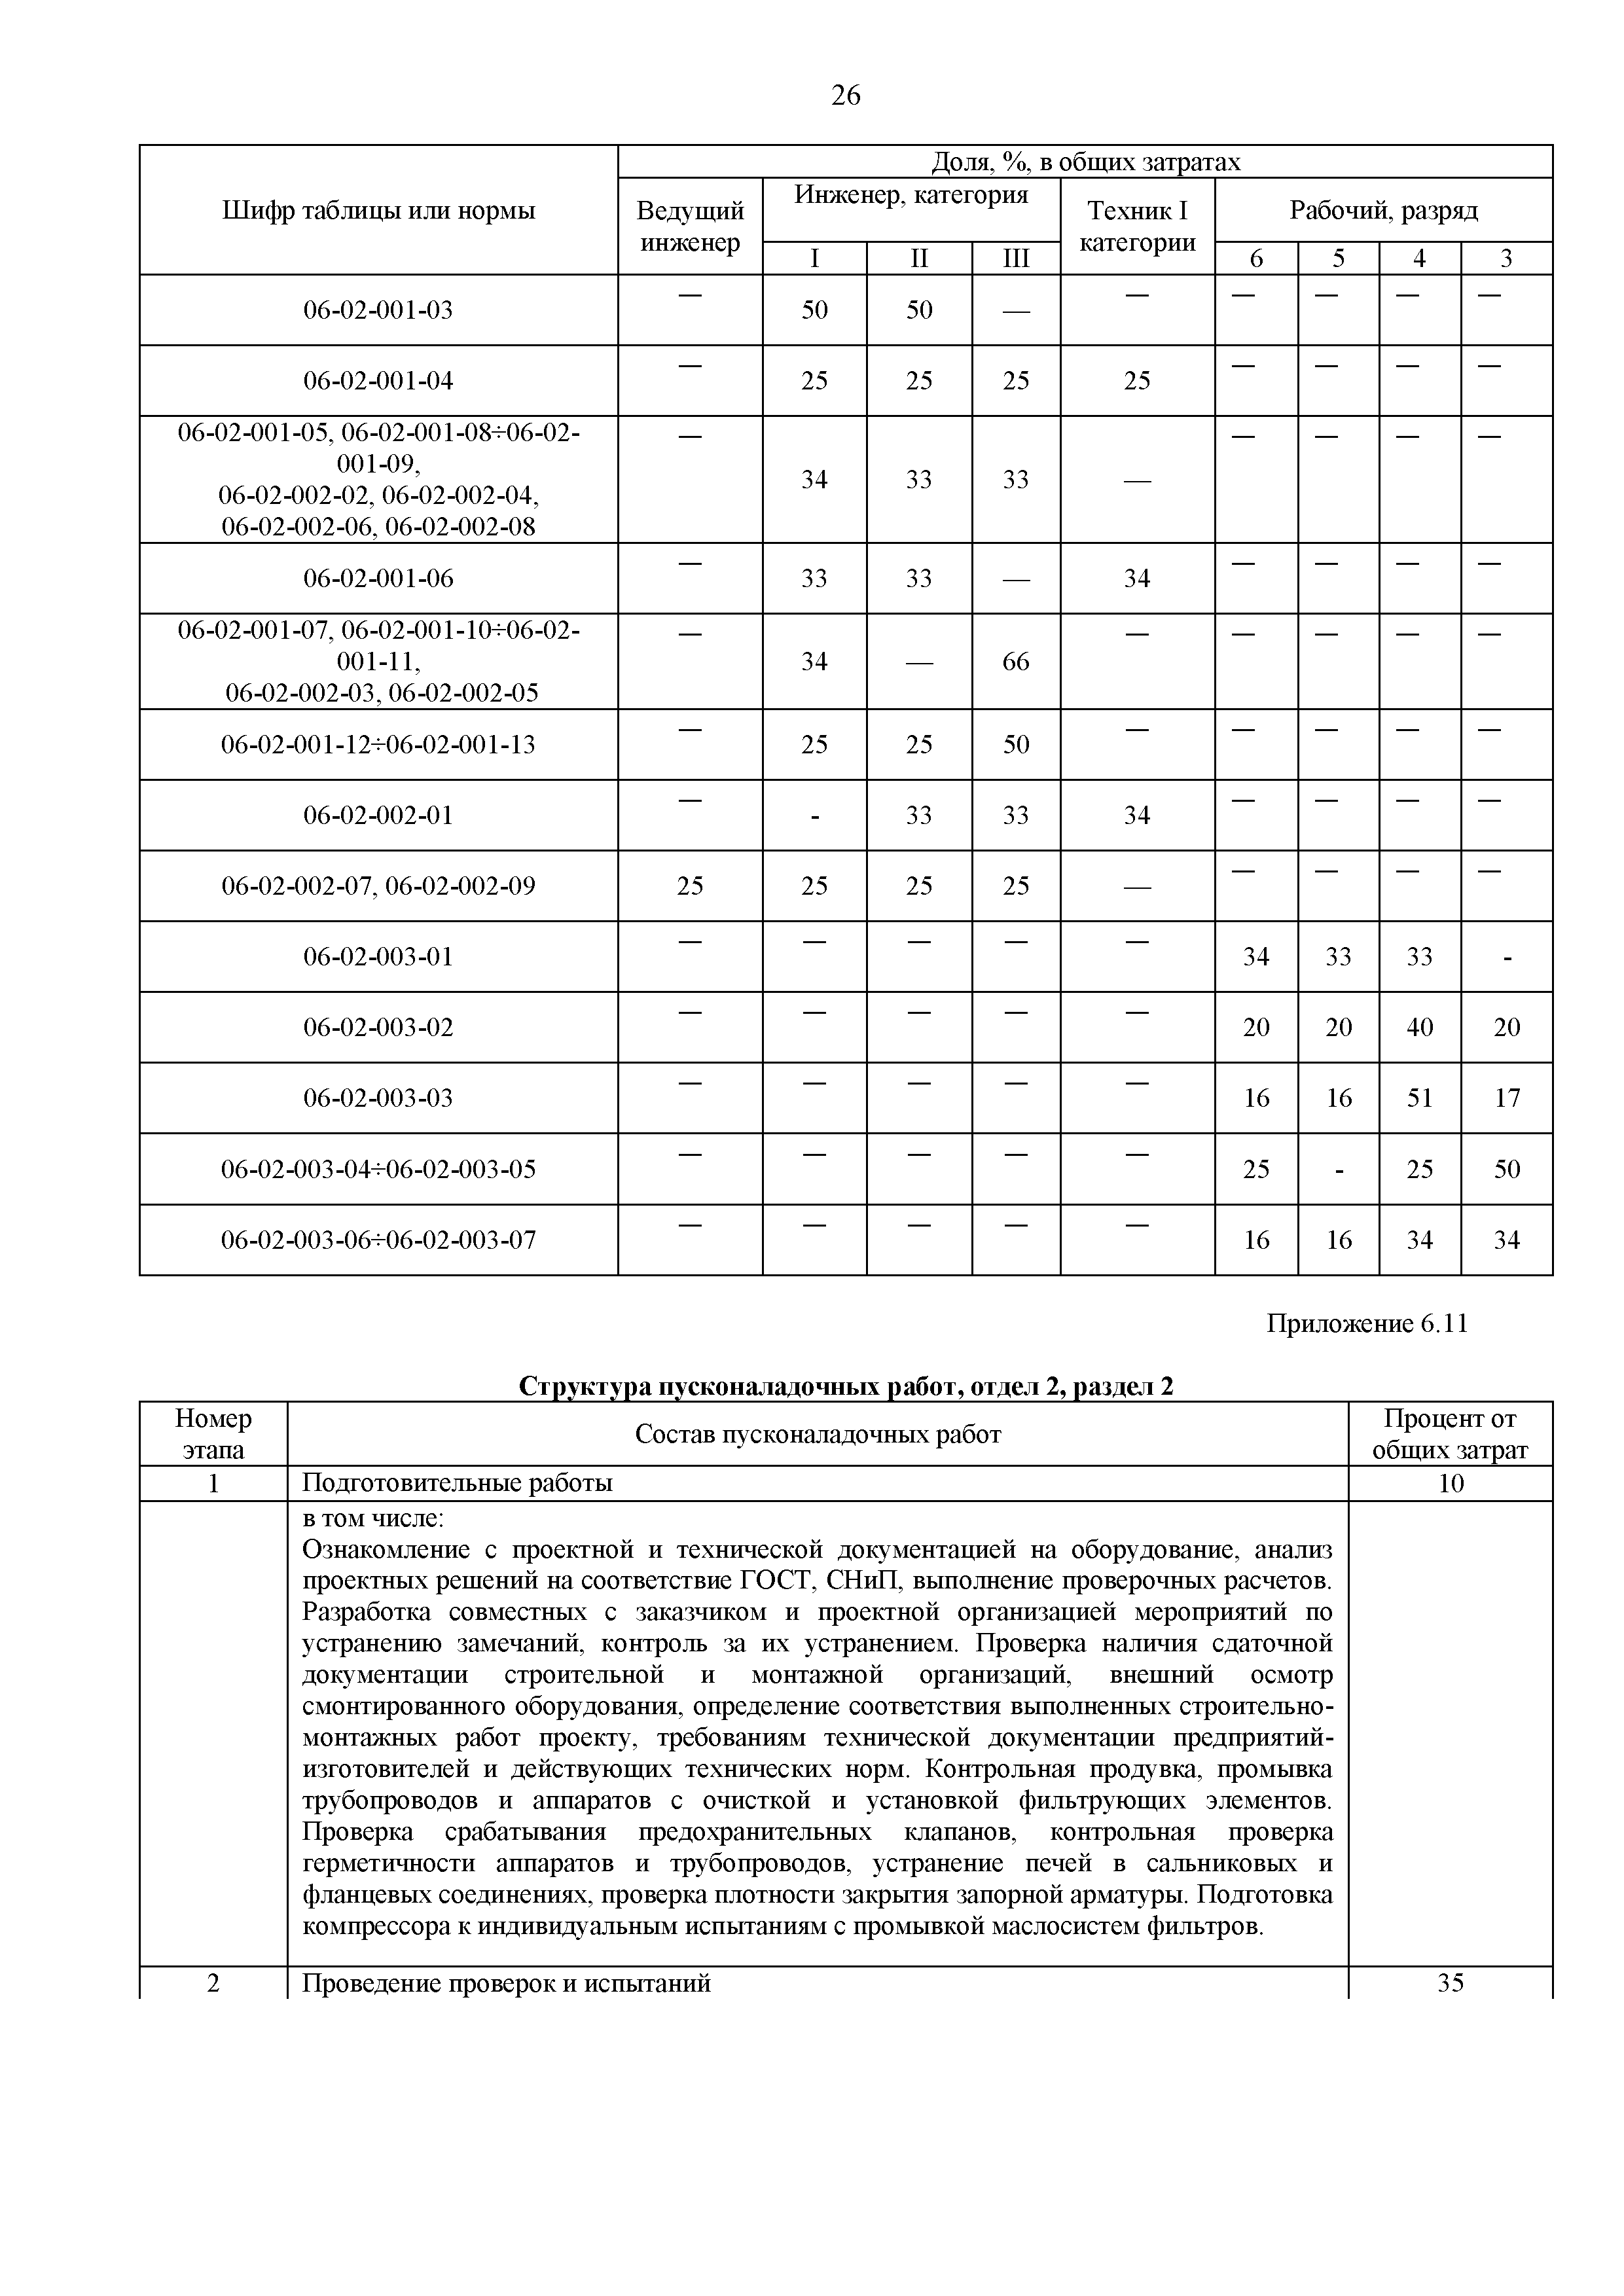 ГЭСНп 81-05-06-2020